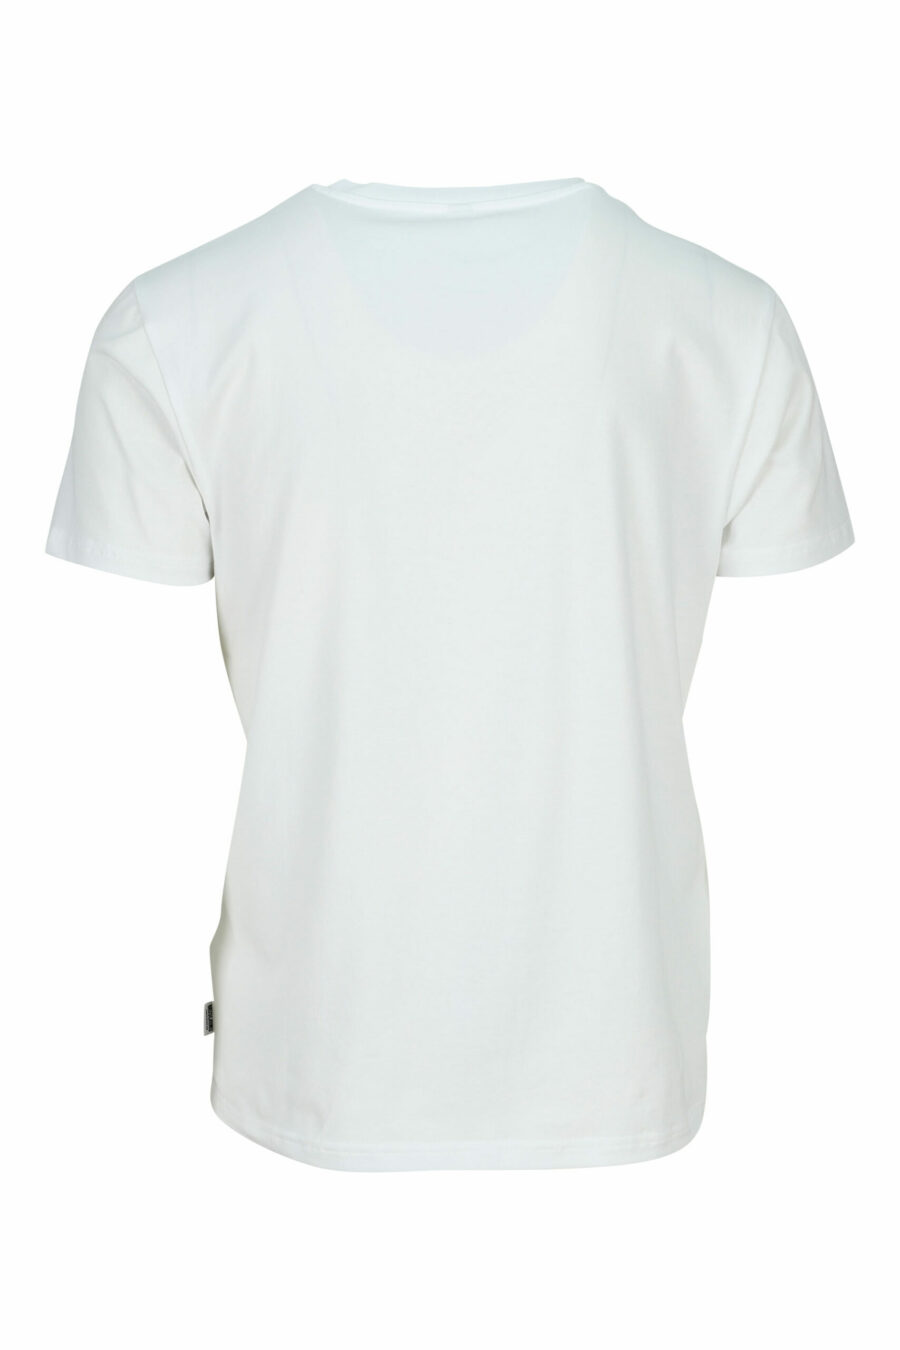 Weißes T-Shirt mit Mini-Logo Bär "underbear" in schwarzem Gummi - 667113602585 1 skaliert